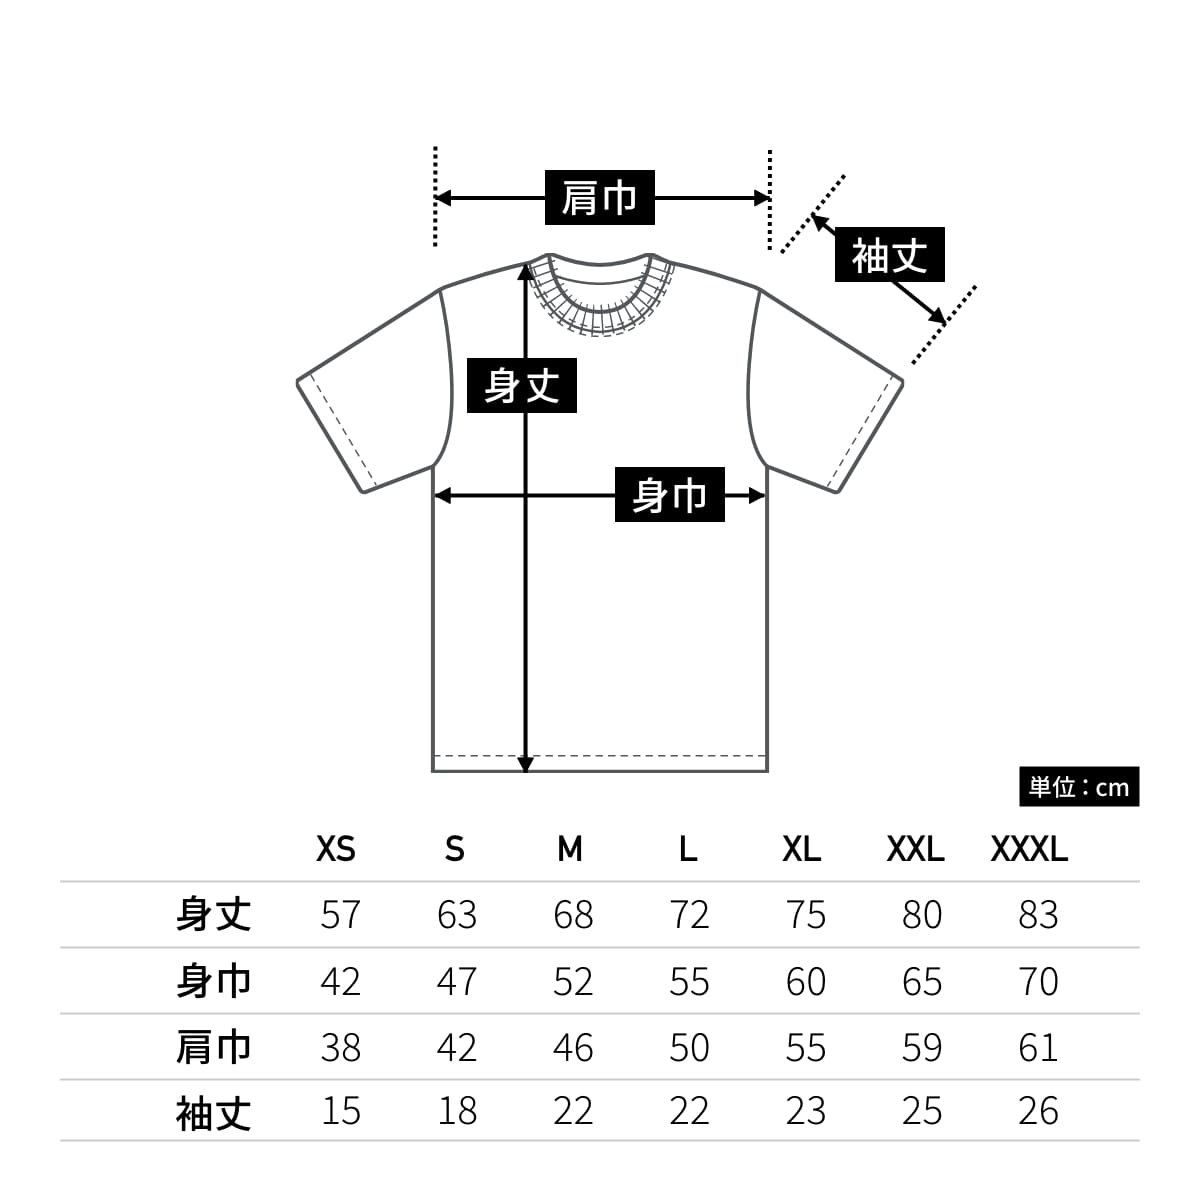 6.2オンス プレミアム Tシャツ | ビッグサイズ | 1枚 | 5942-01 | ロイヤルブルー